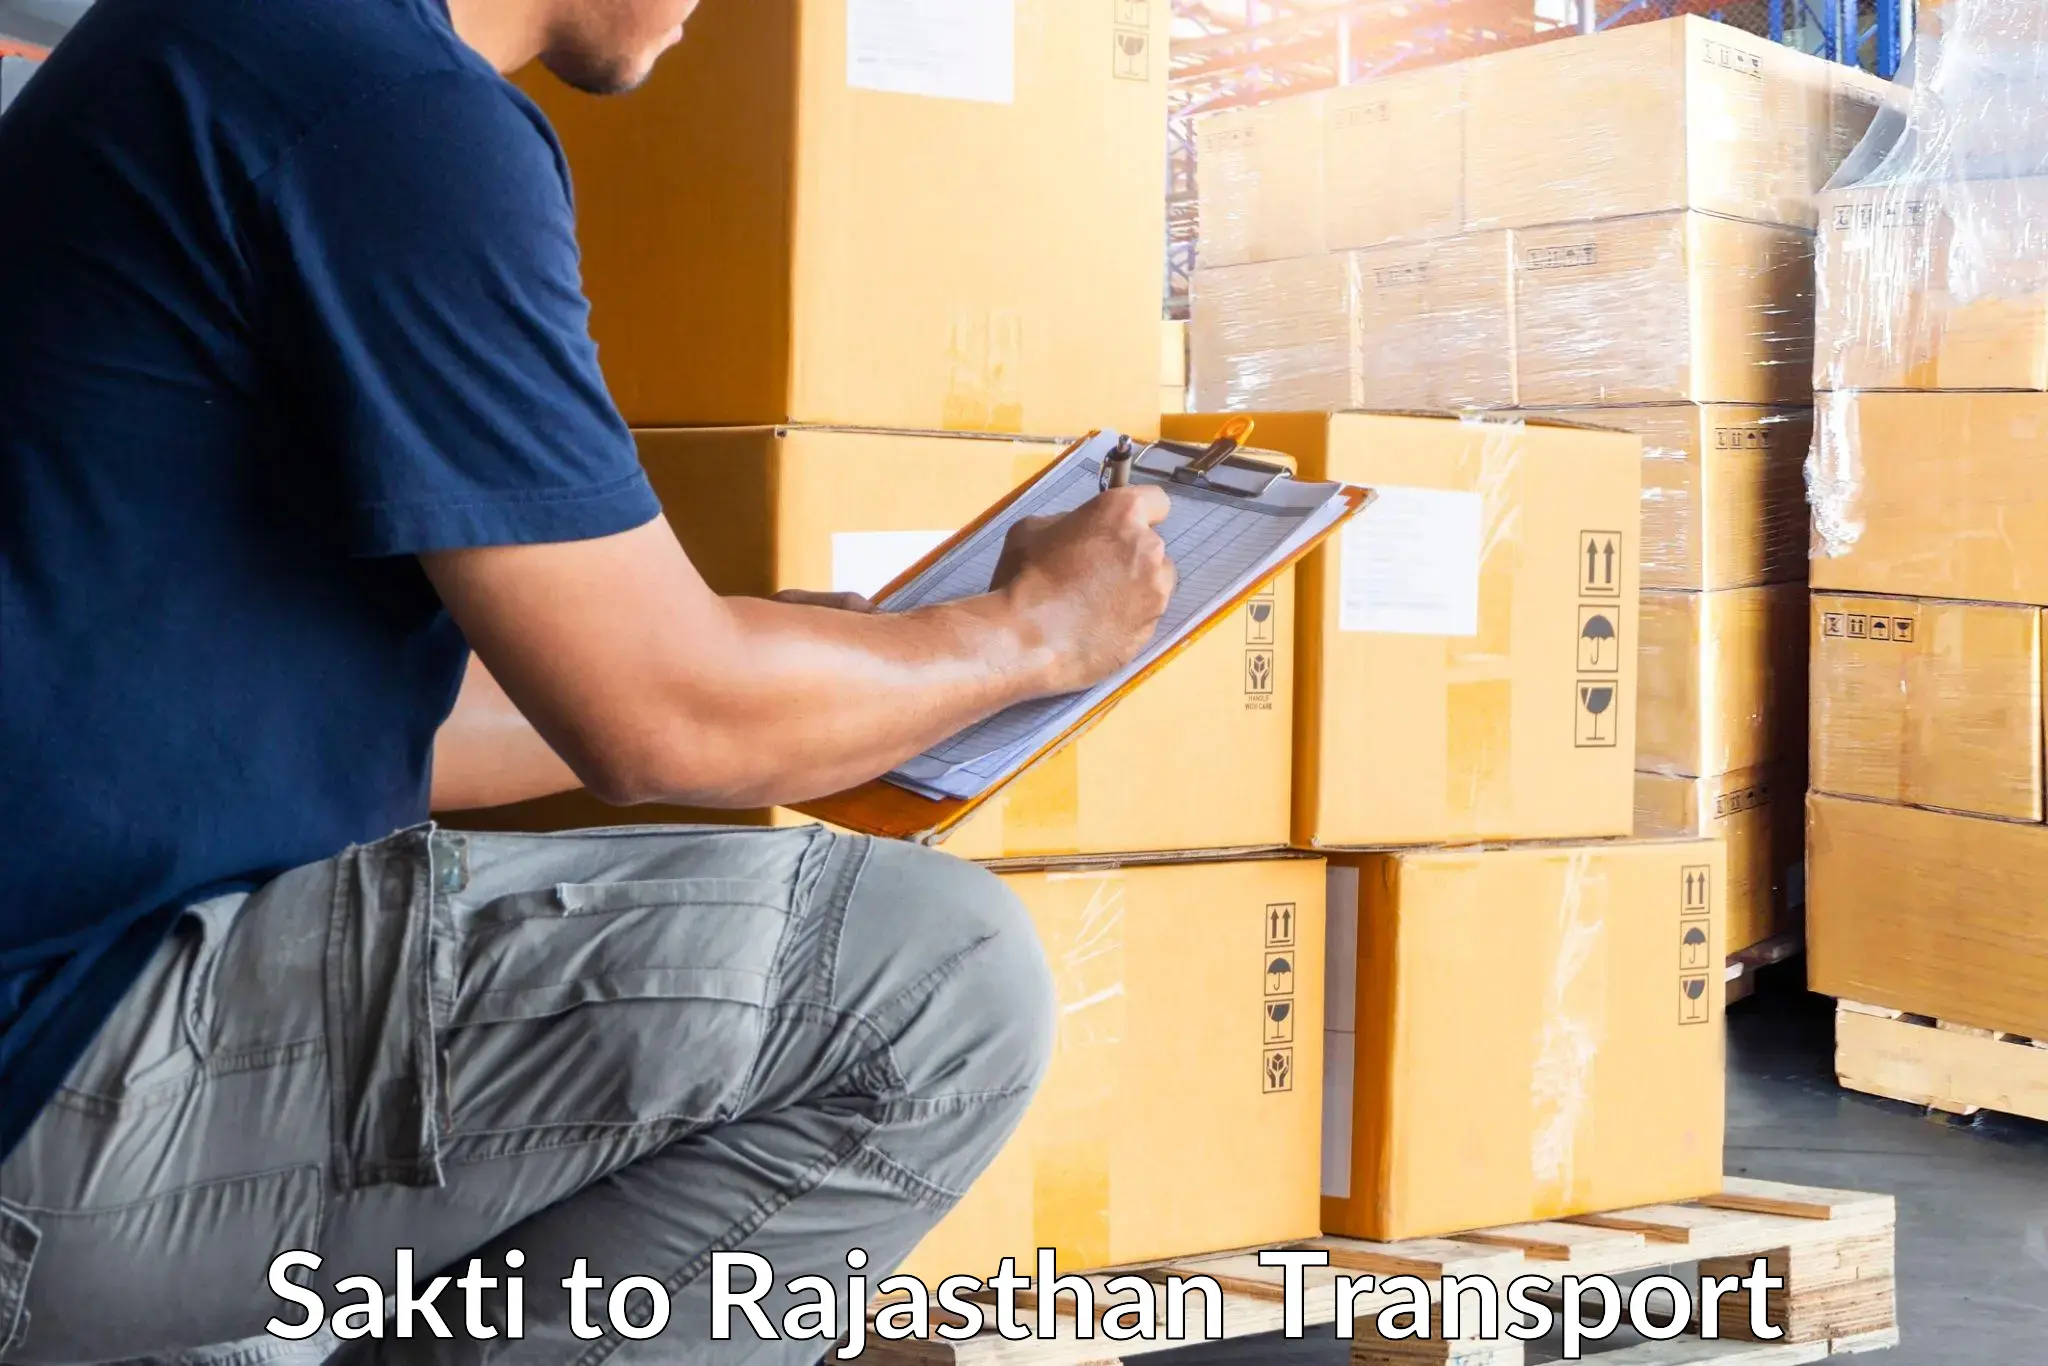 Pick up transport service Sakti to Rajasthan